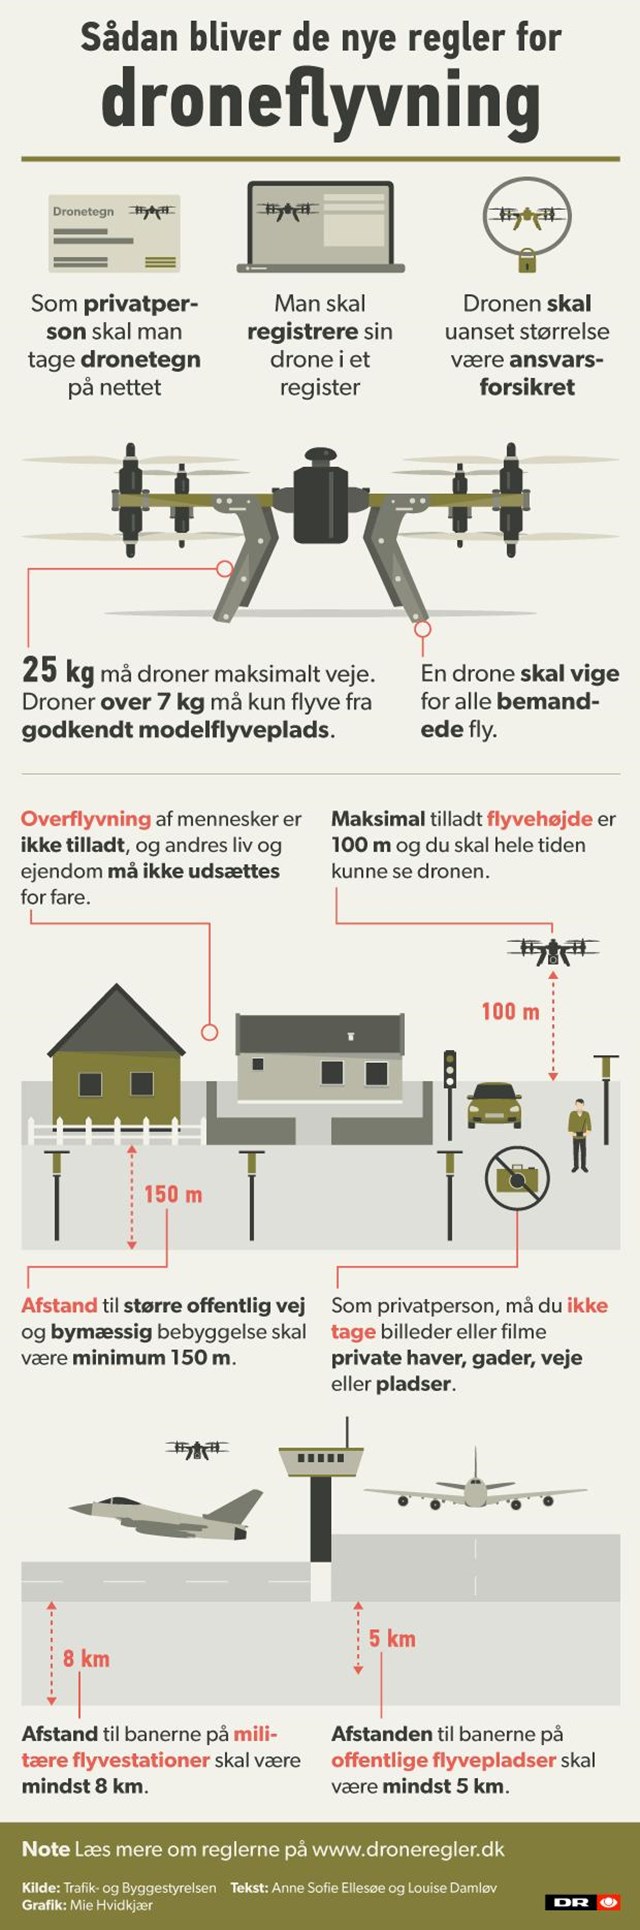 https://www.dr.dk/nyheder/indland/grafik-saadan-maa-du-flyve-med-din-drone